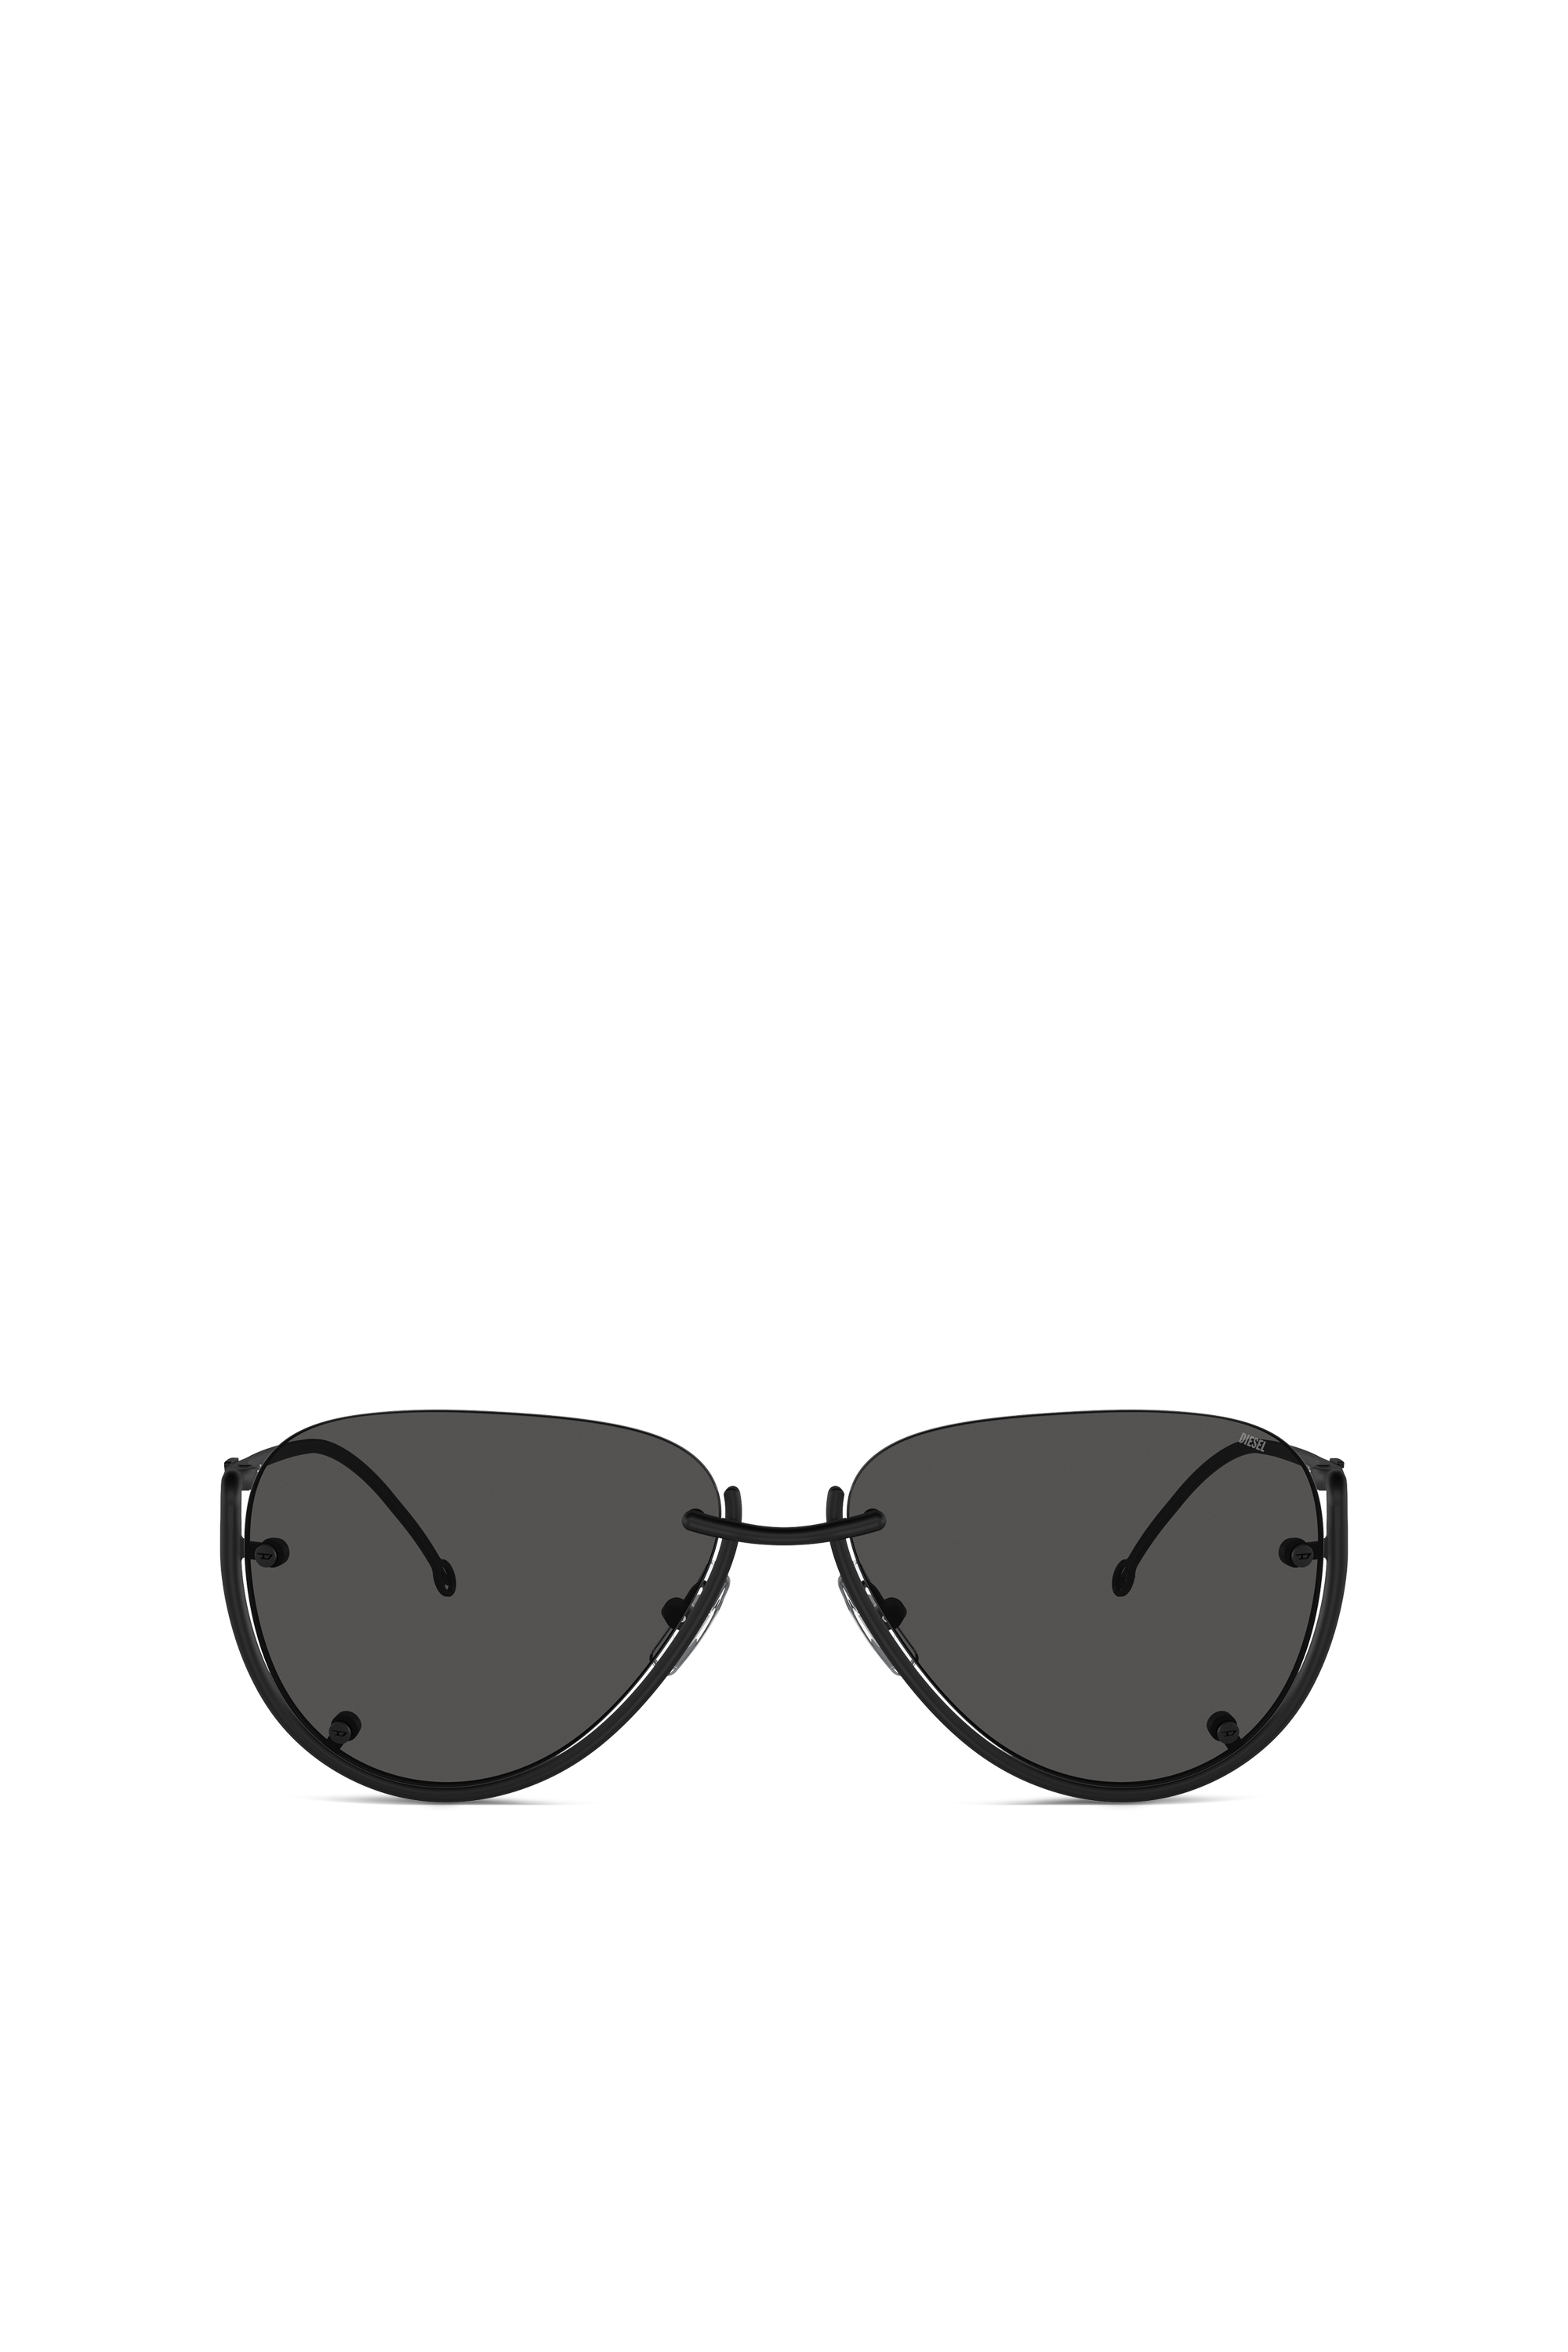 Diesel - Brille in Pilotenform - Sonnenbrille - Unisex - Schwarz